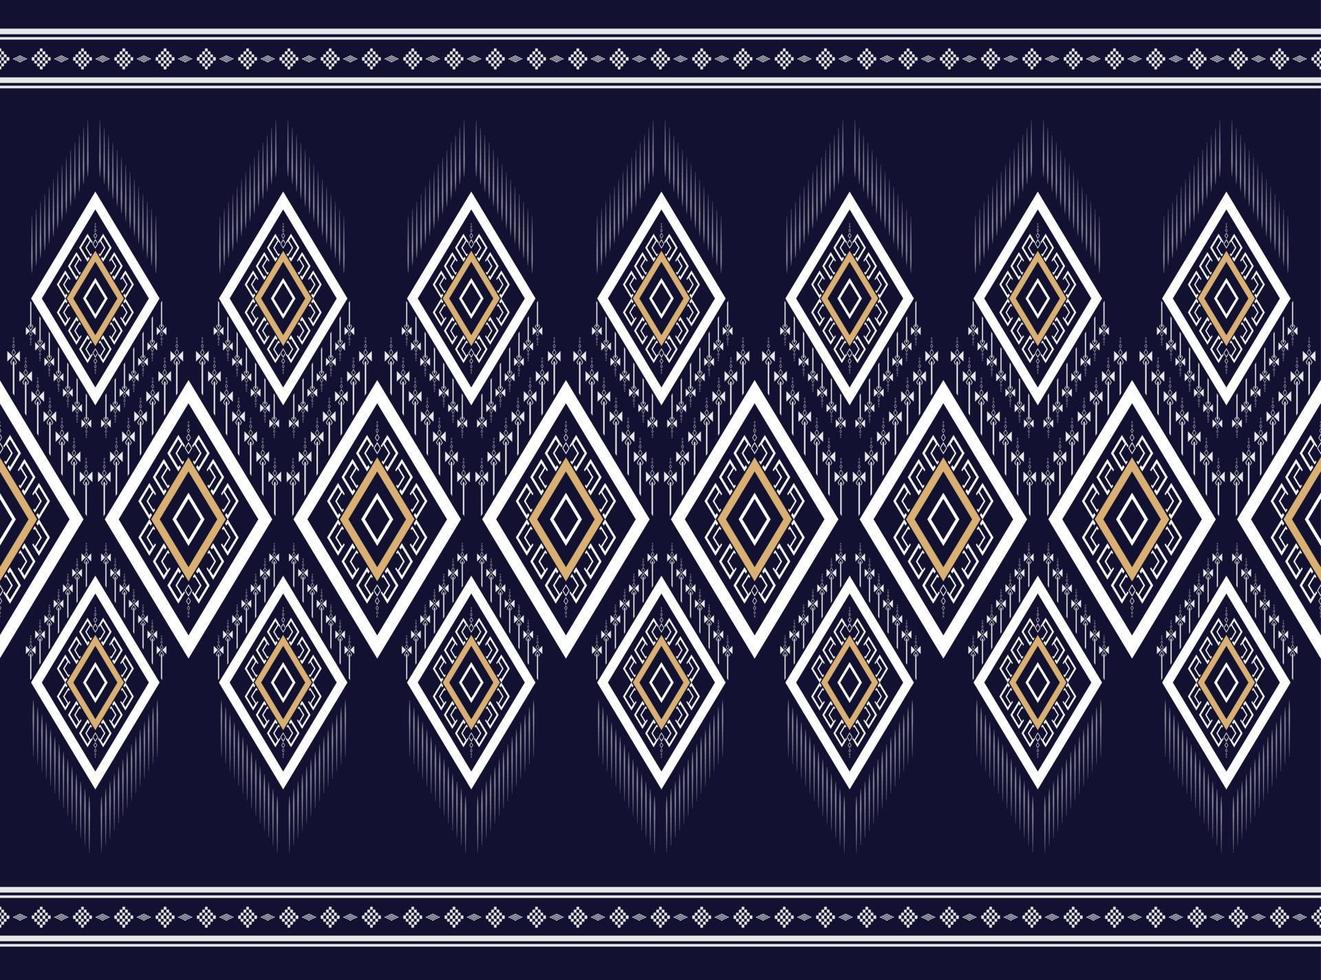 zwart-wit geometrische etnische patroon traditionele textuur voor rok,tapijt,behang,kleding,inwikkeling,batik,stof,kleding, mode,blad witte achtergrond vector en illustratie borduurwerk